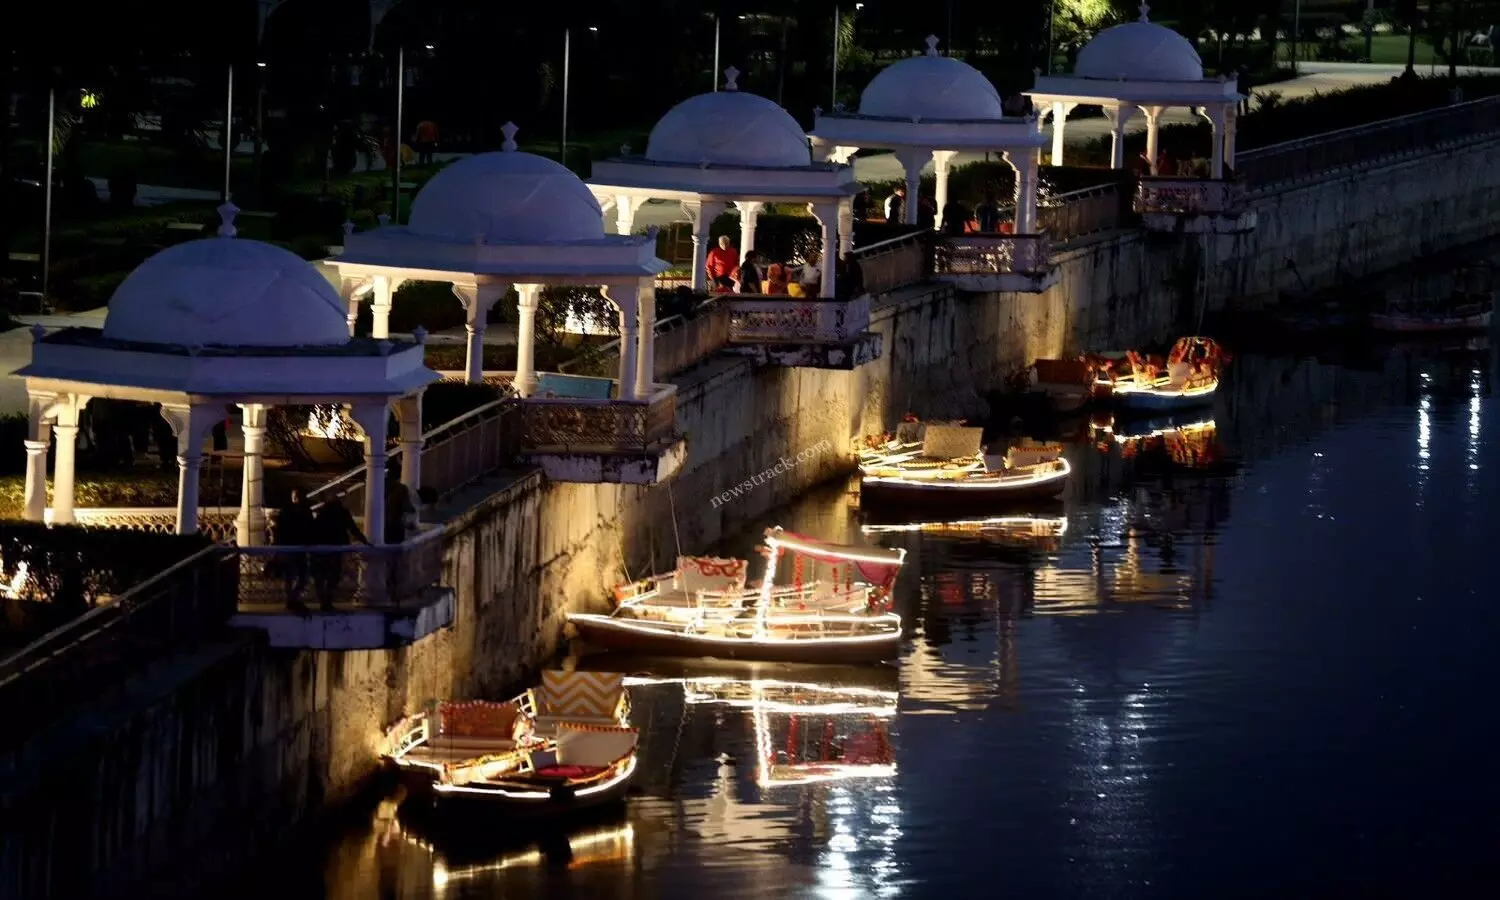 Gomti Riverfront Lucknow: गोमती रिवर फ्रंट की खूबसूरती दूर कर देगी आपकी थकान, रिफ्रेश होने के लिए ये लखनऊ की सबसे बेस्ट जगह